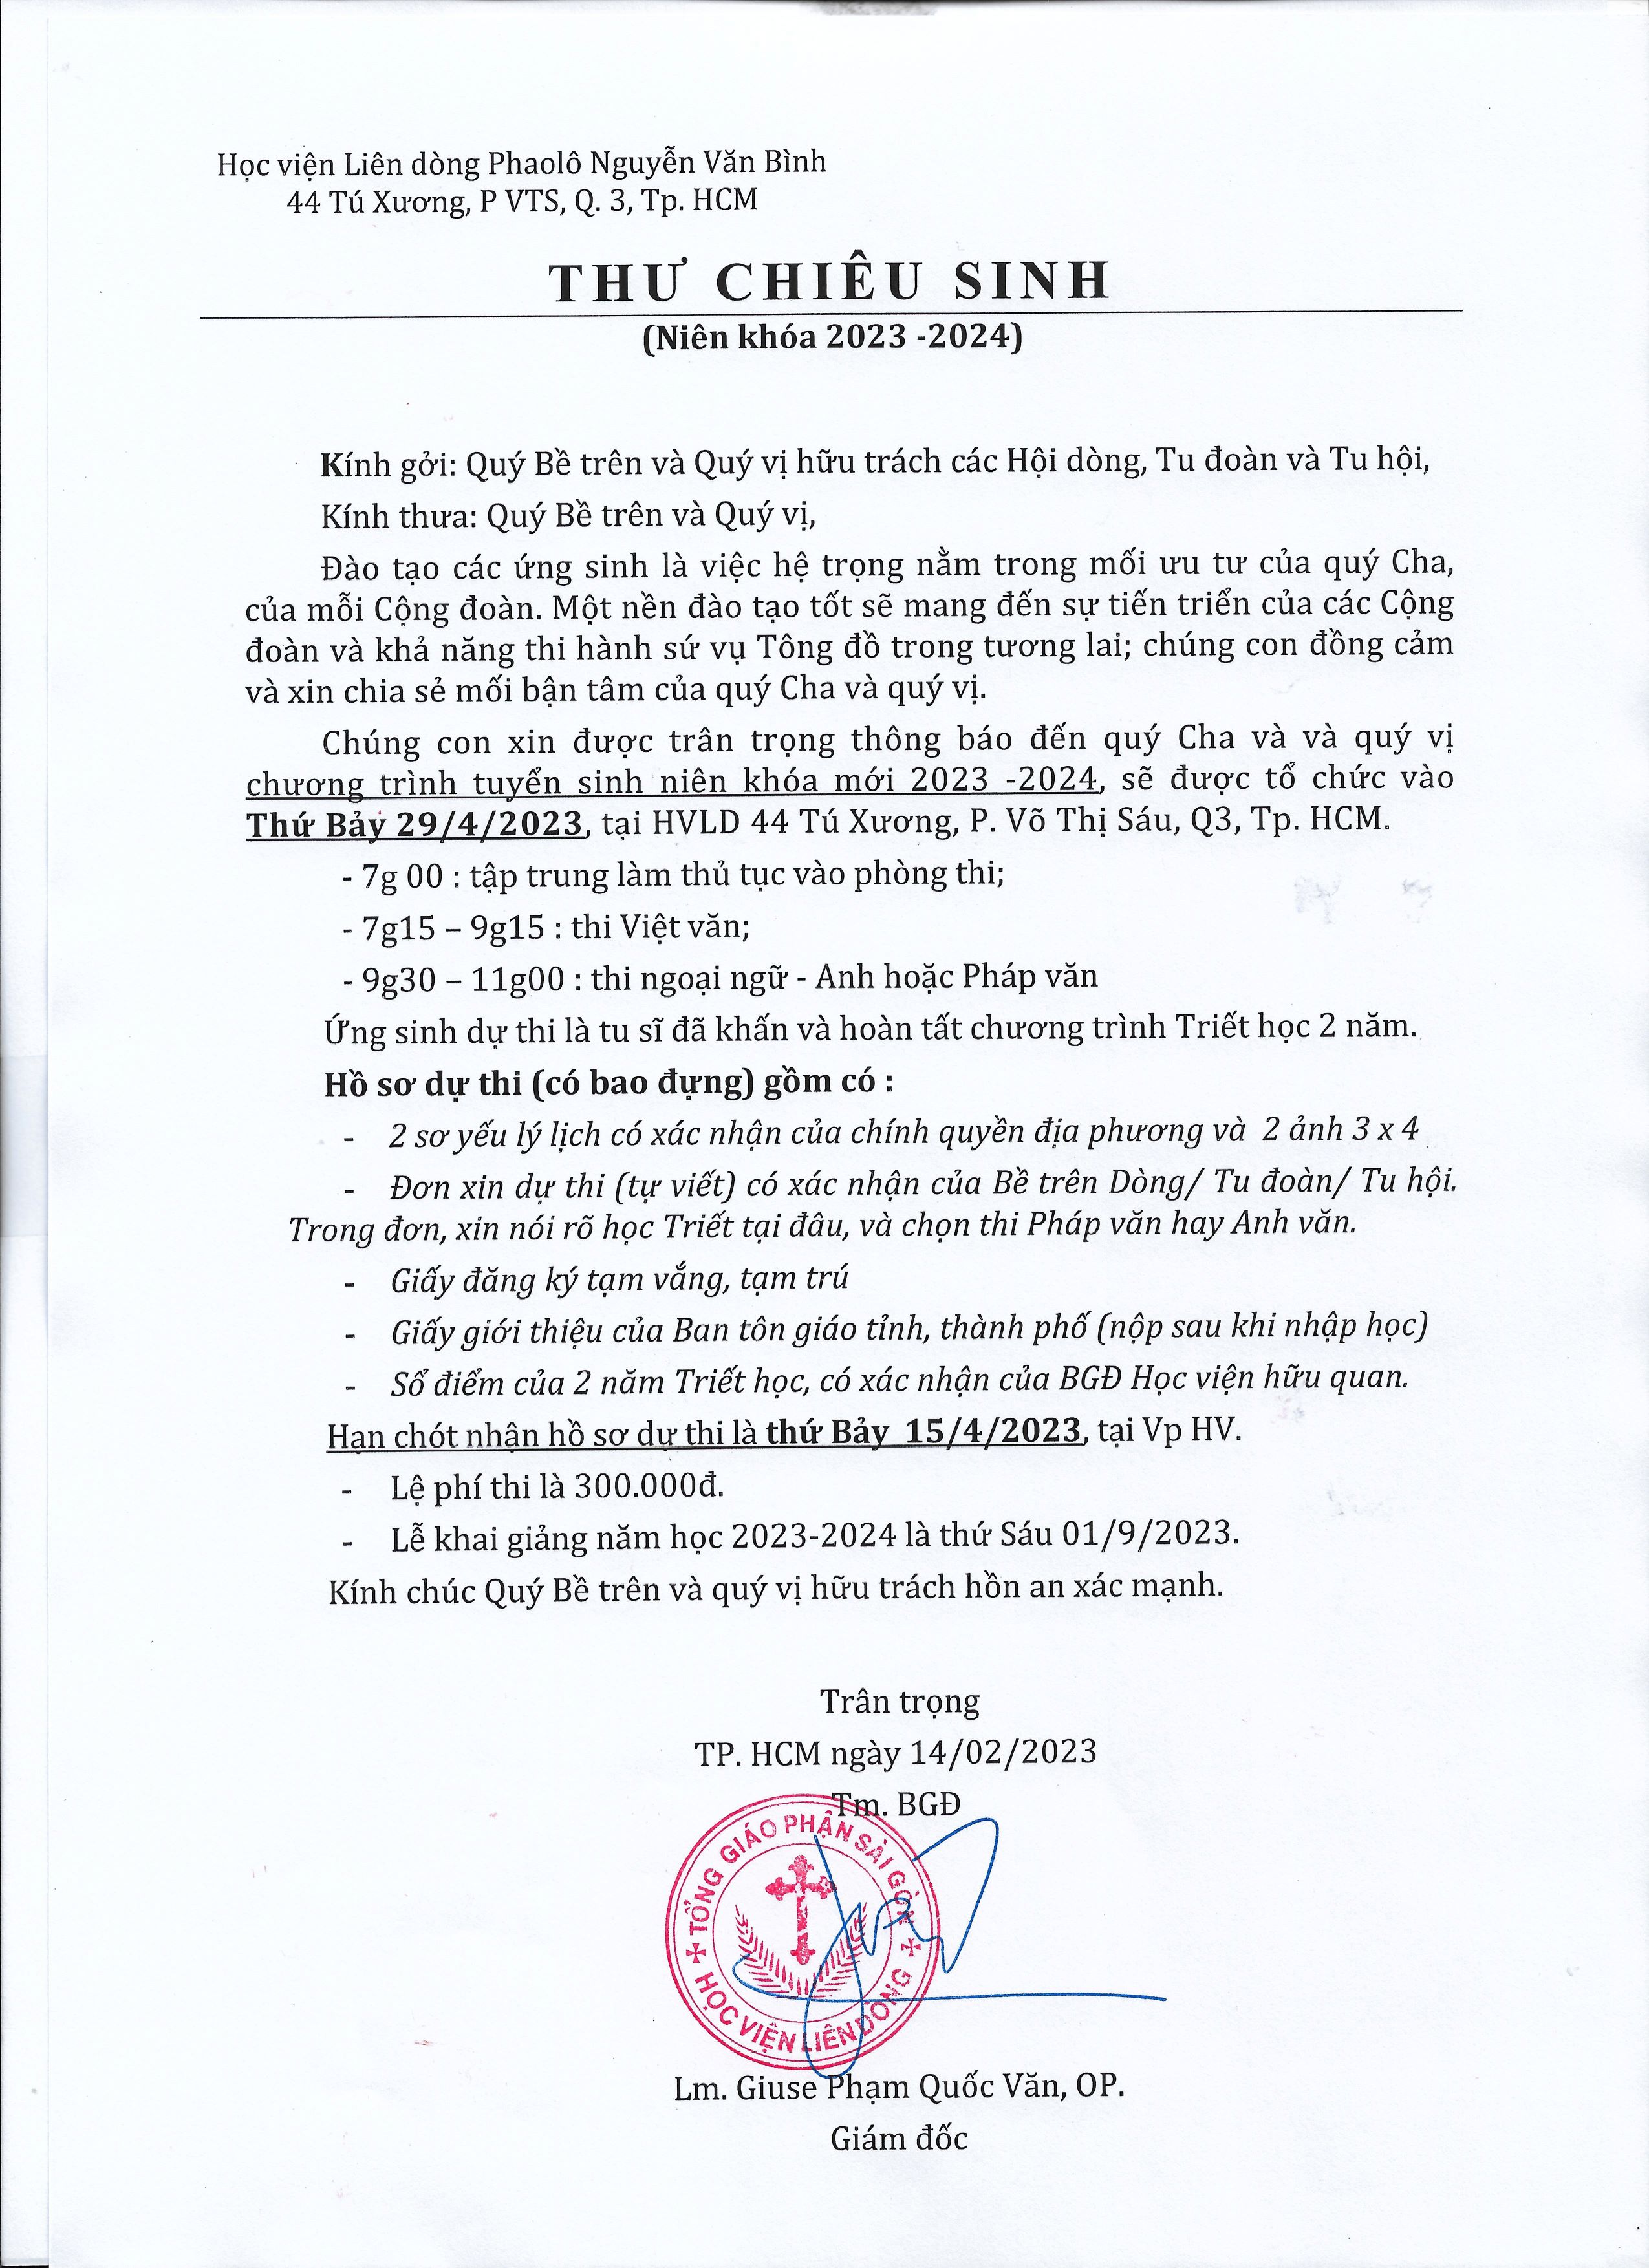 Học viện Liên dòng Phaolô Nguyễn Văn Bình: Thư chiêu sinh niên khóa 2023-2024